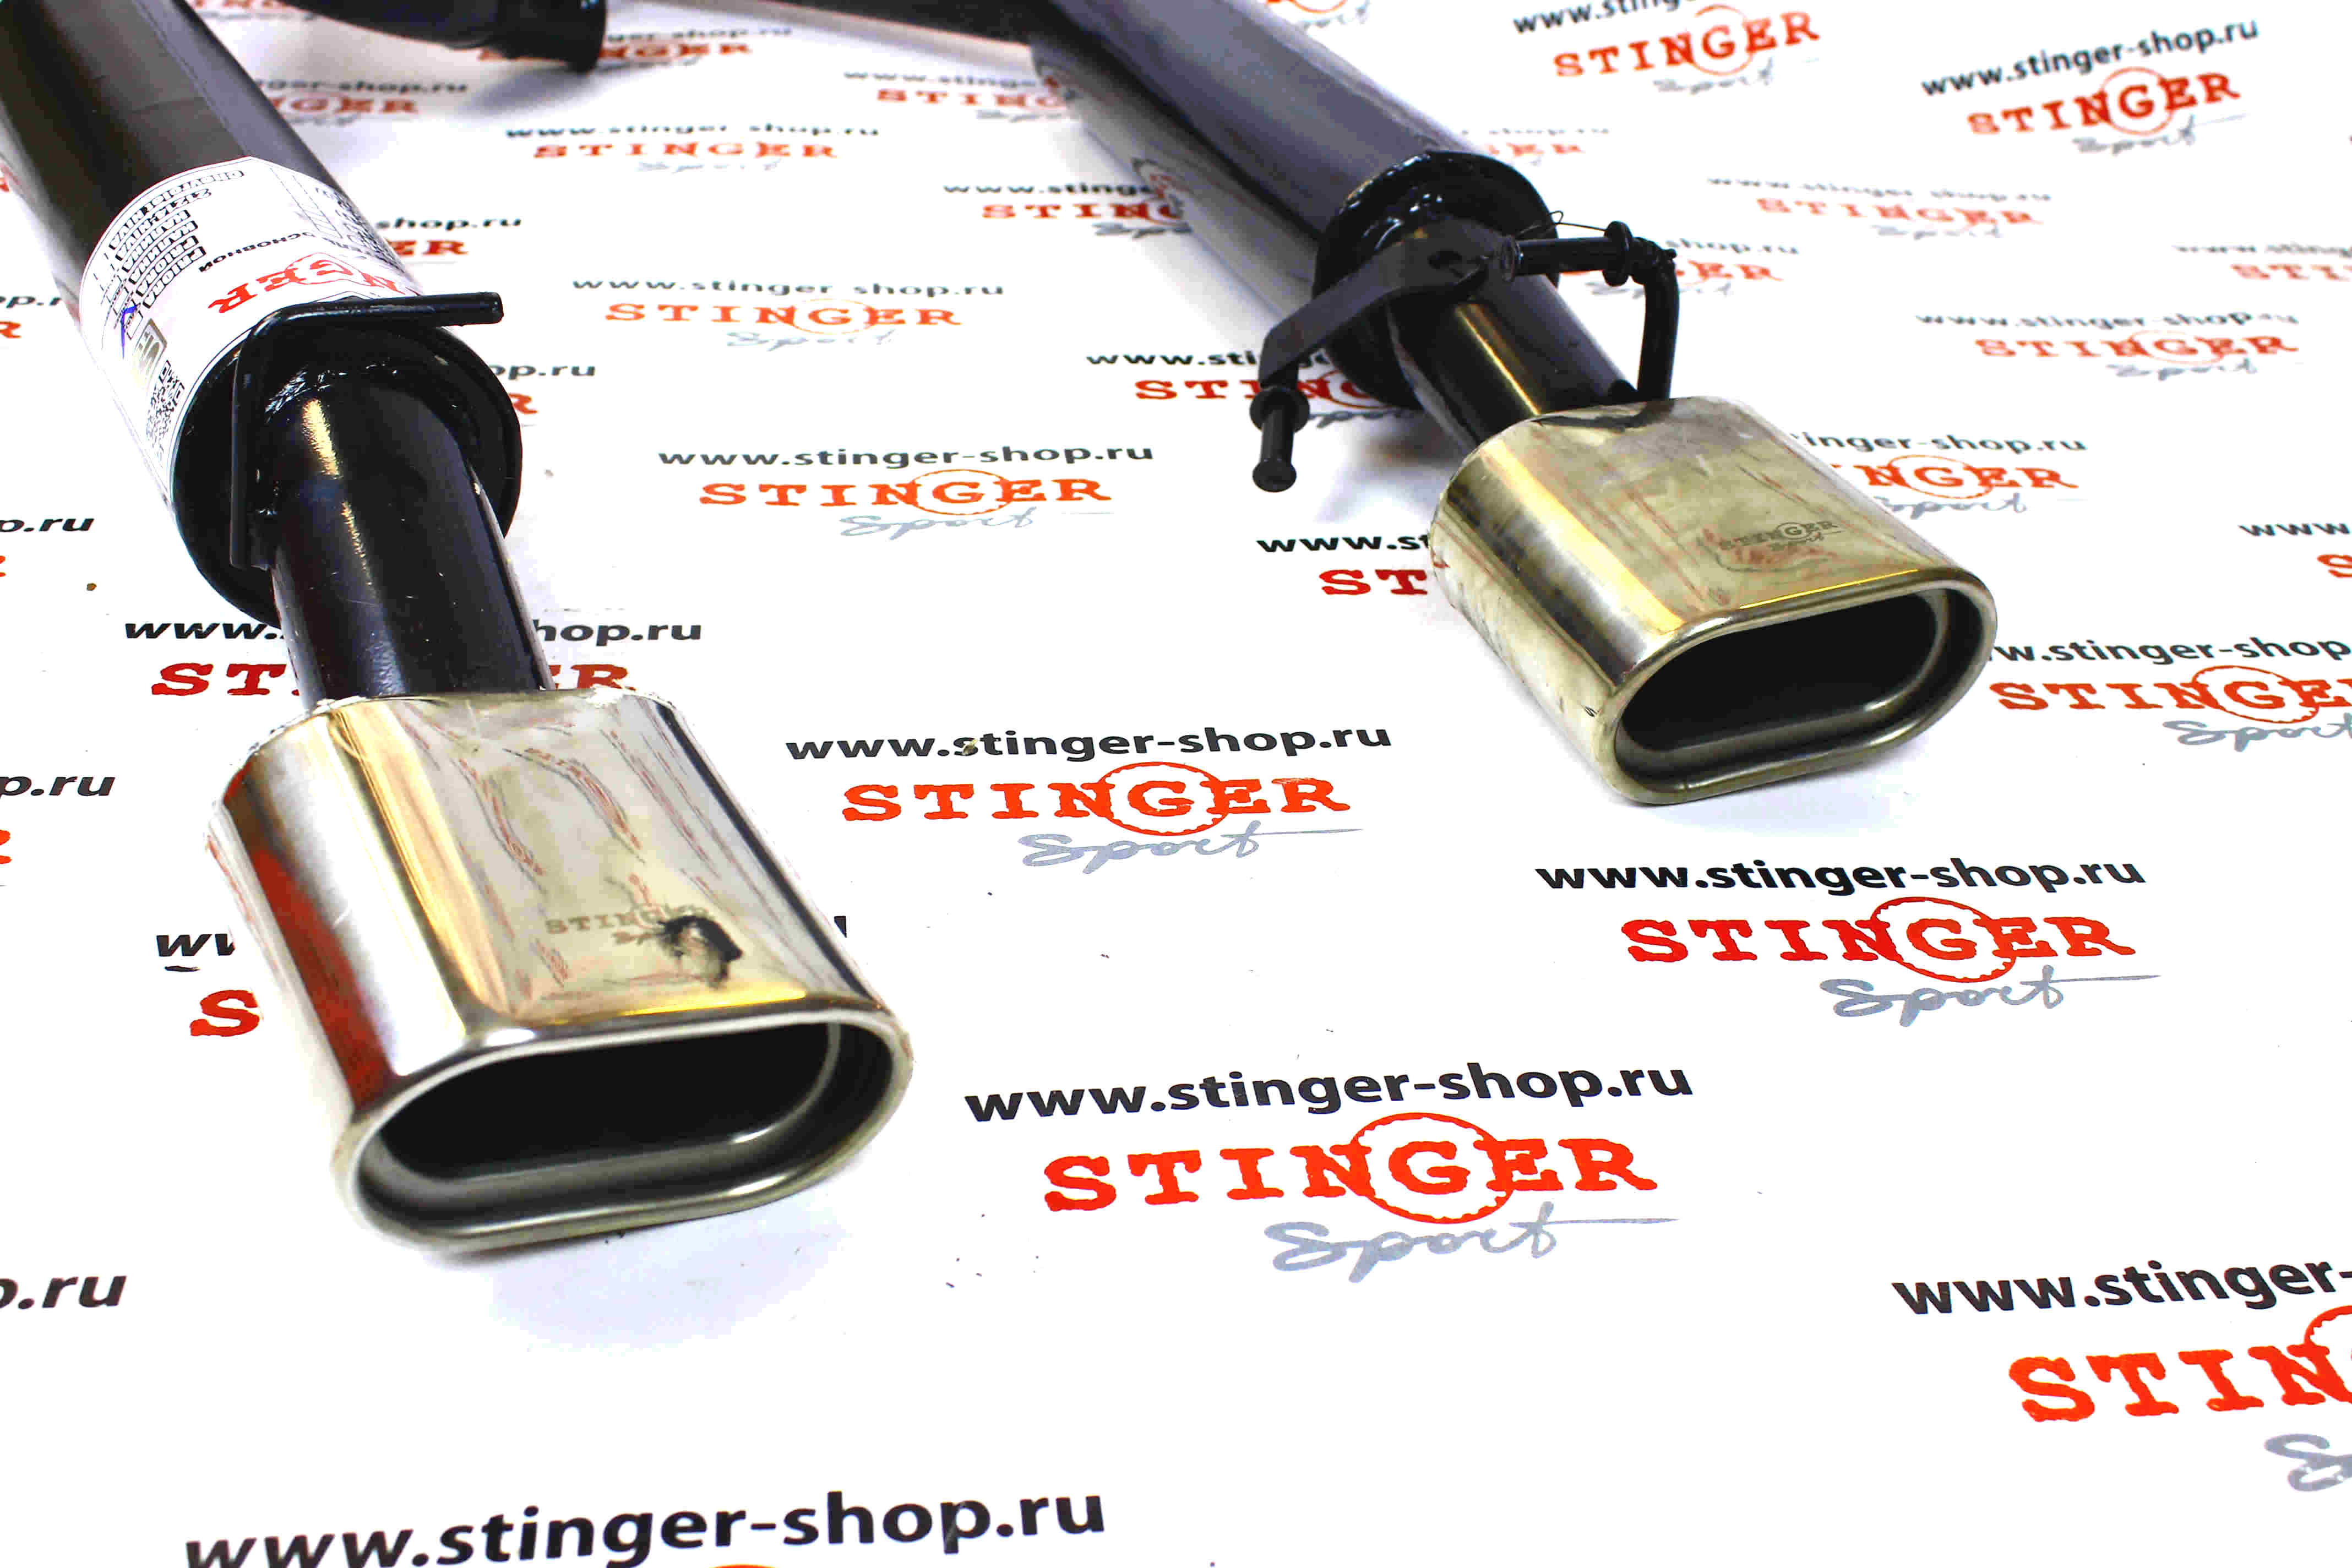 Глушитель основной "Stinger Sport" для а/м ВАЗ 2172 Приора хетчбэк раздвоенный с насадками. Фото �3